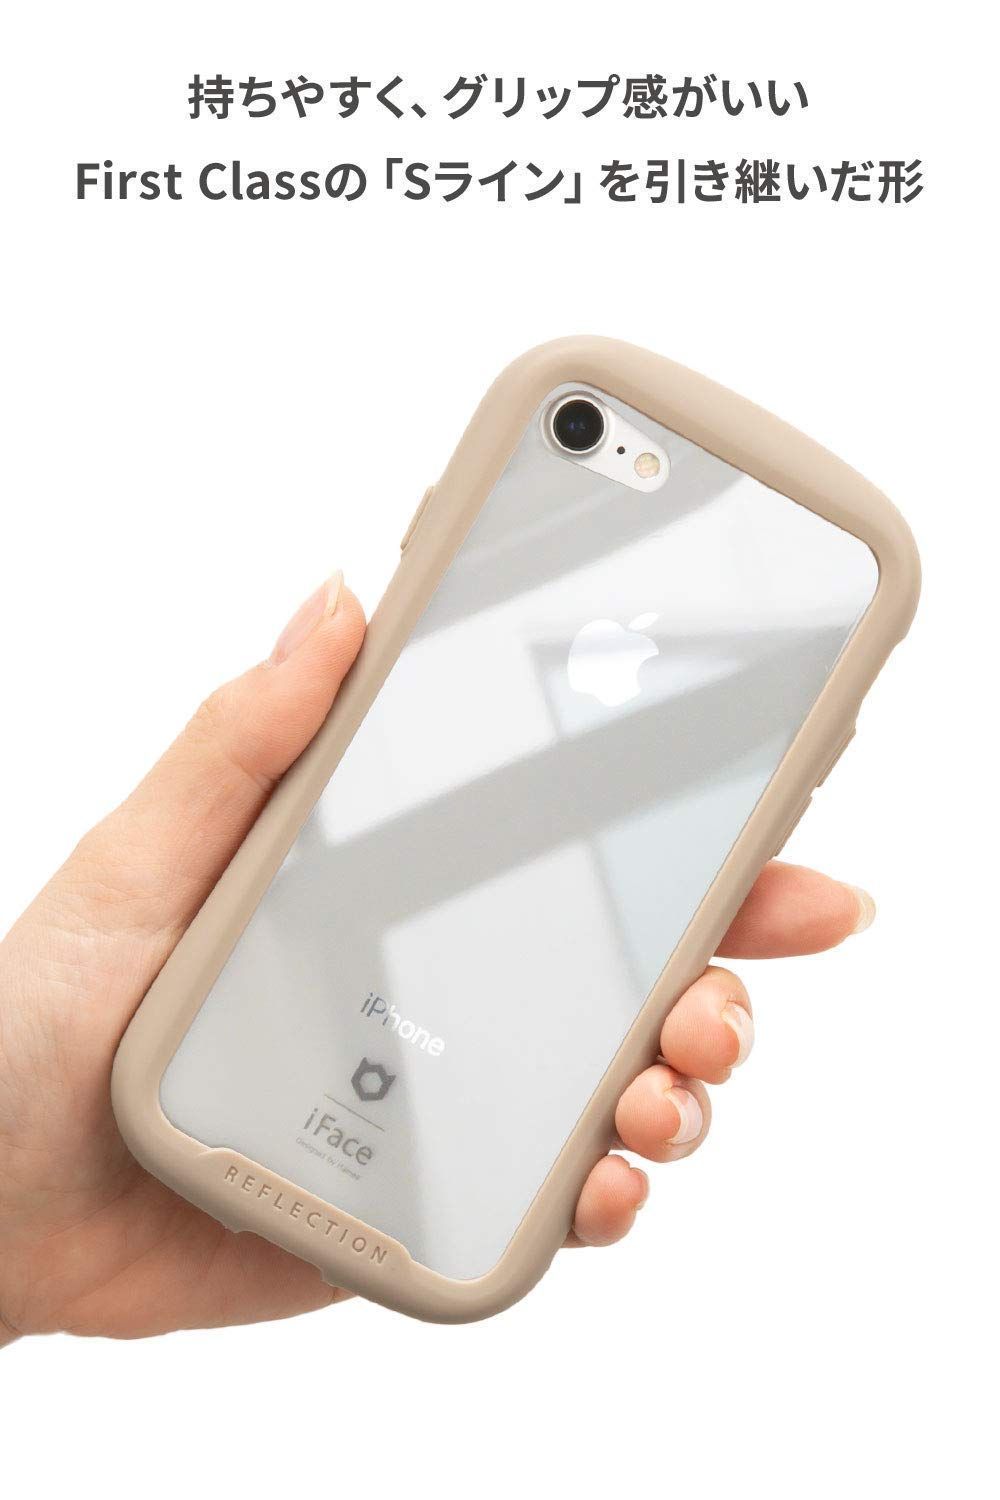 新着商品 Max ケース Pro クリア 11 iPhone 強化ガラス Reflection (ブラック) iFace 6349.26円  スマホアクセサリー